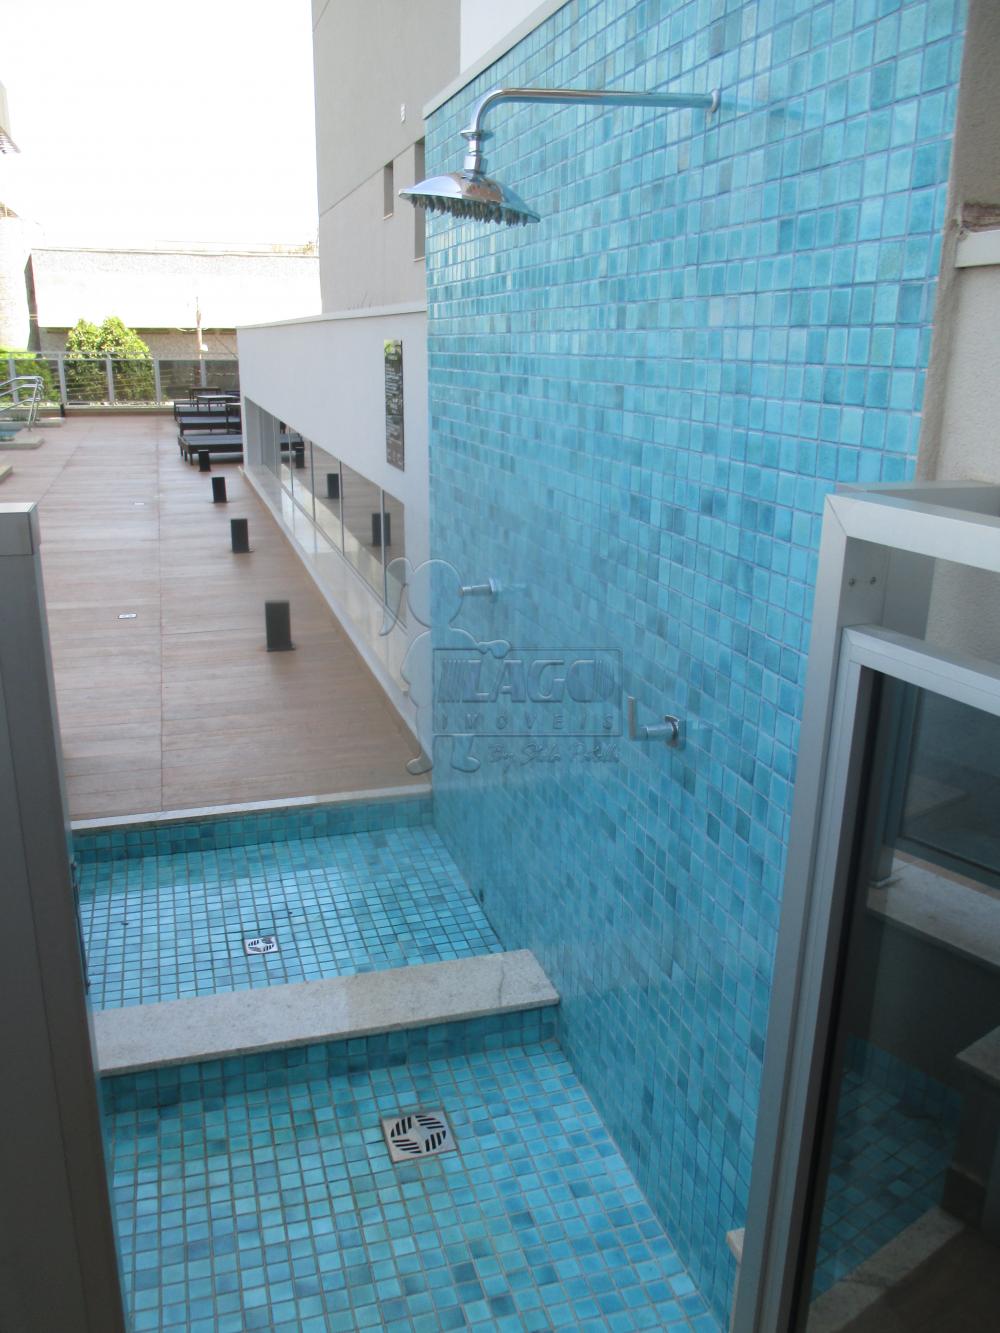 Alugar Apartamentos / Studio / Kitnet em Ribeirão Preto R$ 1.100,00 - Foto 48